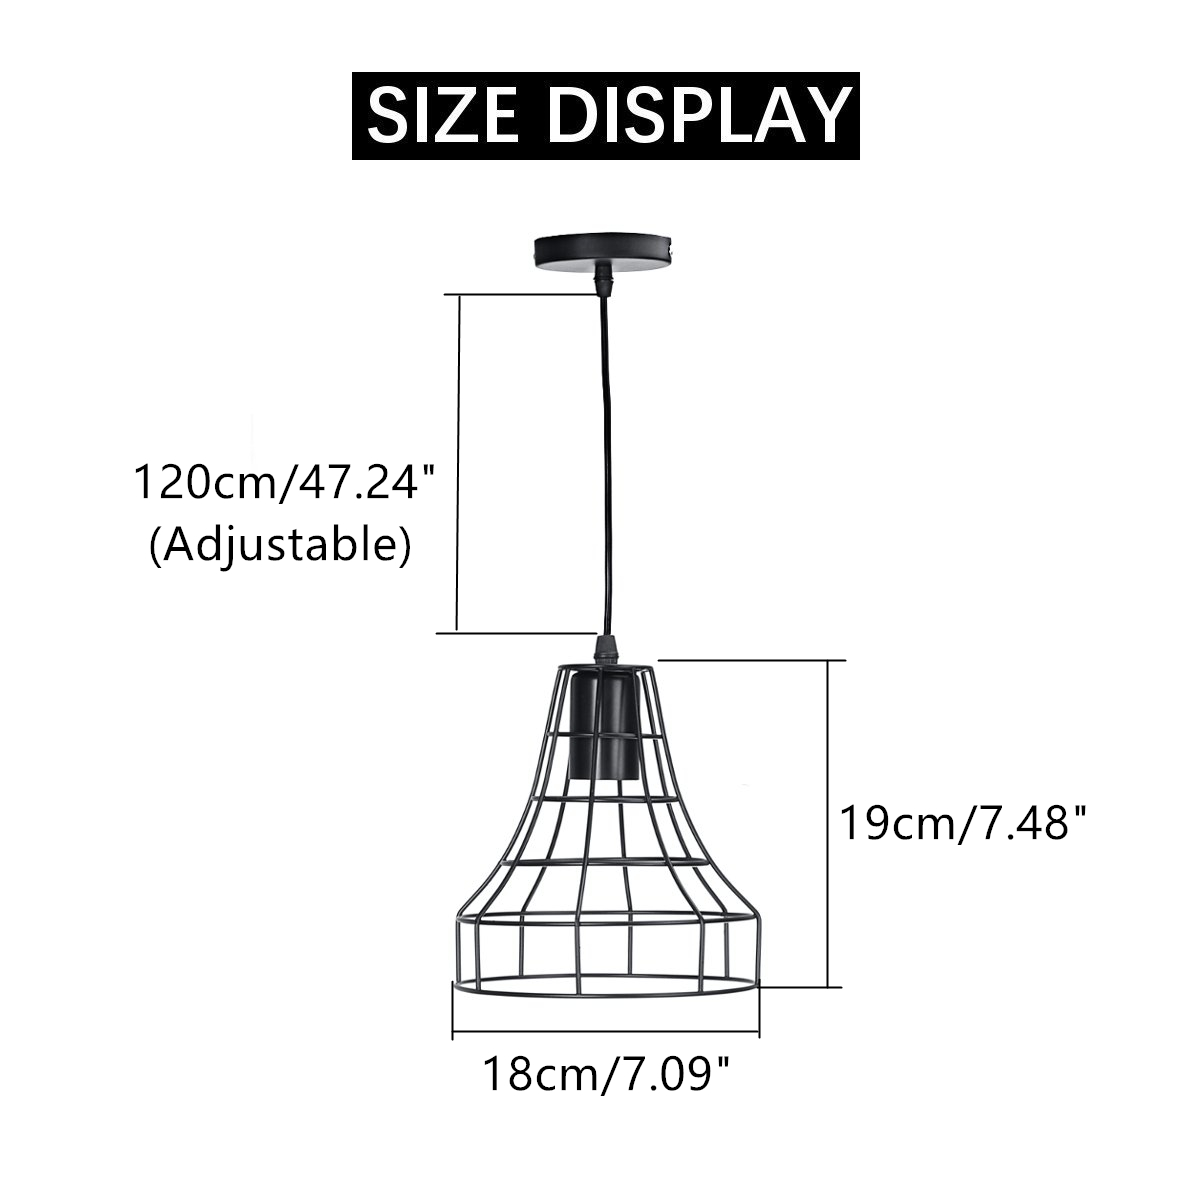 E27-Vintage-Retro-Pendant-Light-Ceiling-Lamp-Home-Dining-Fixture-Decoration-1697169-9